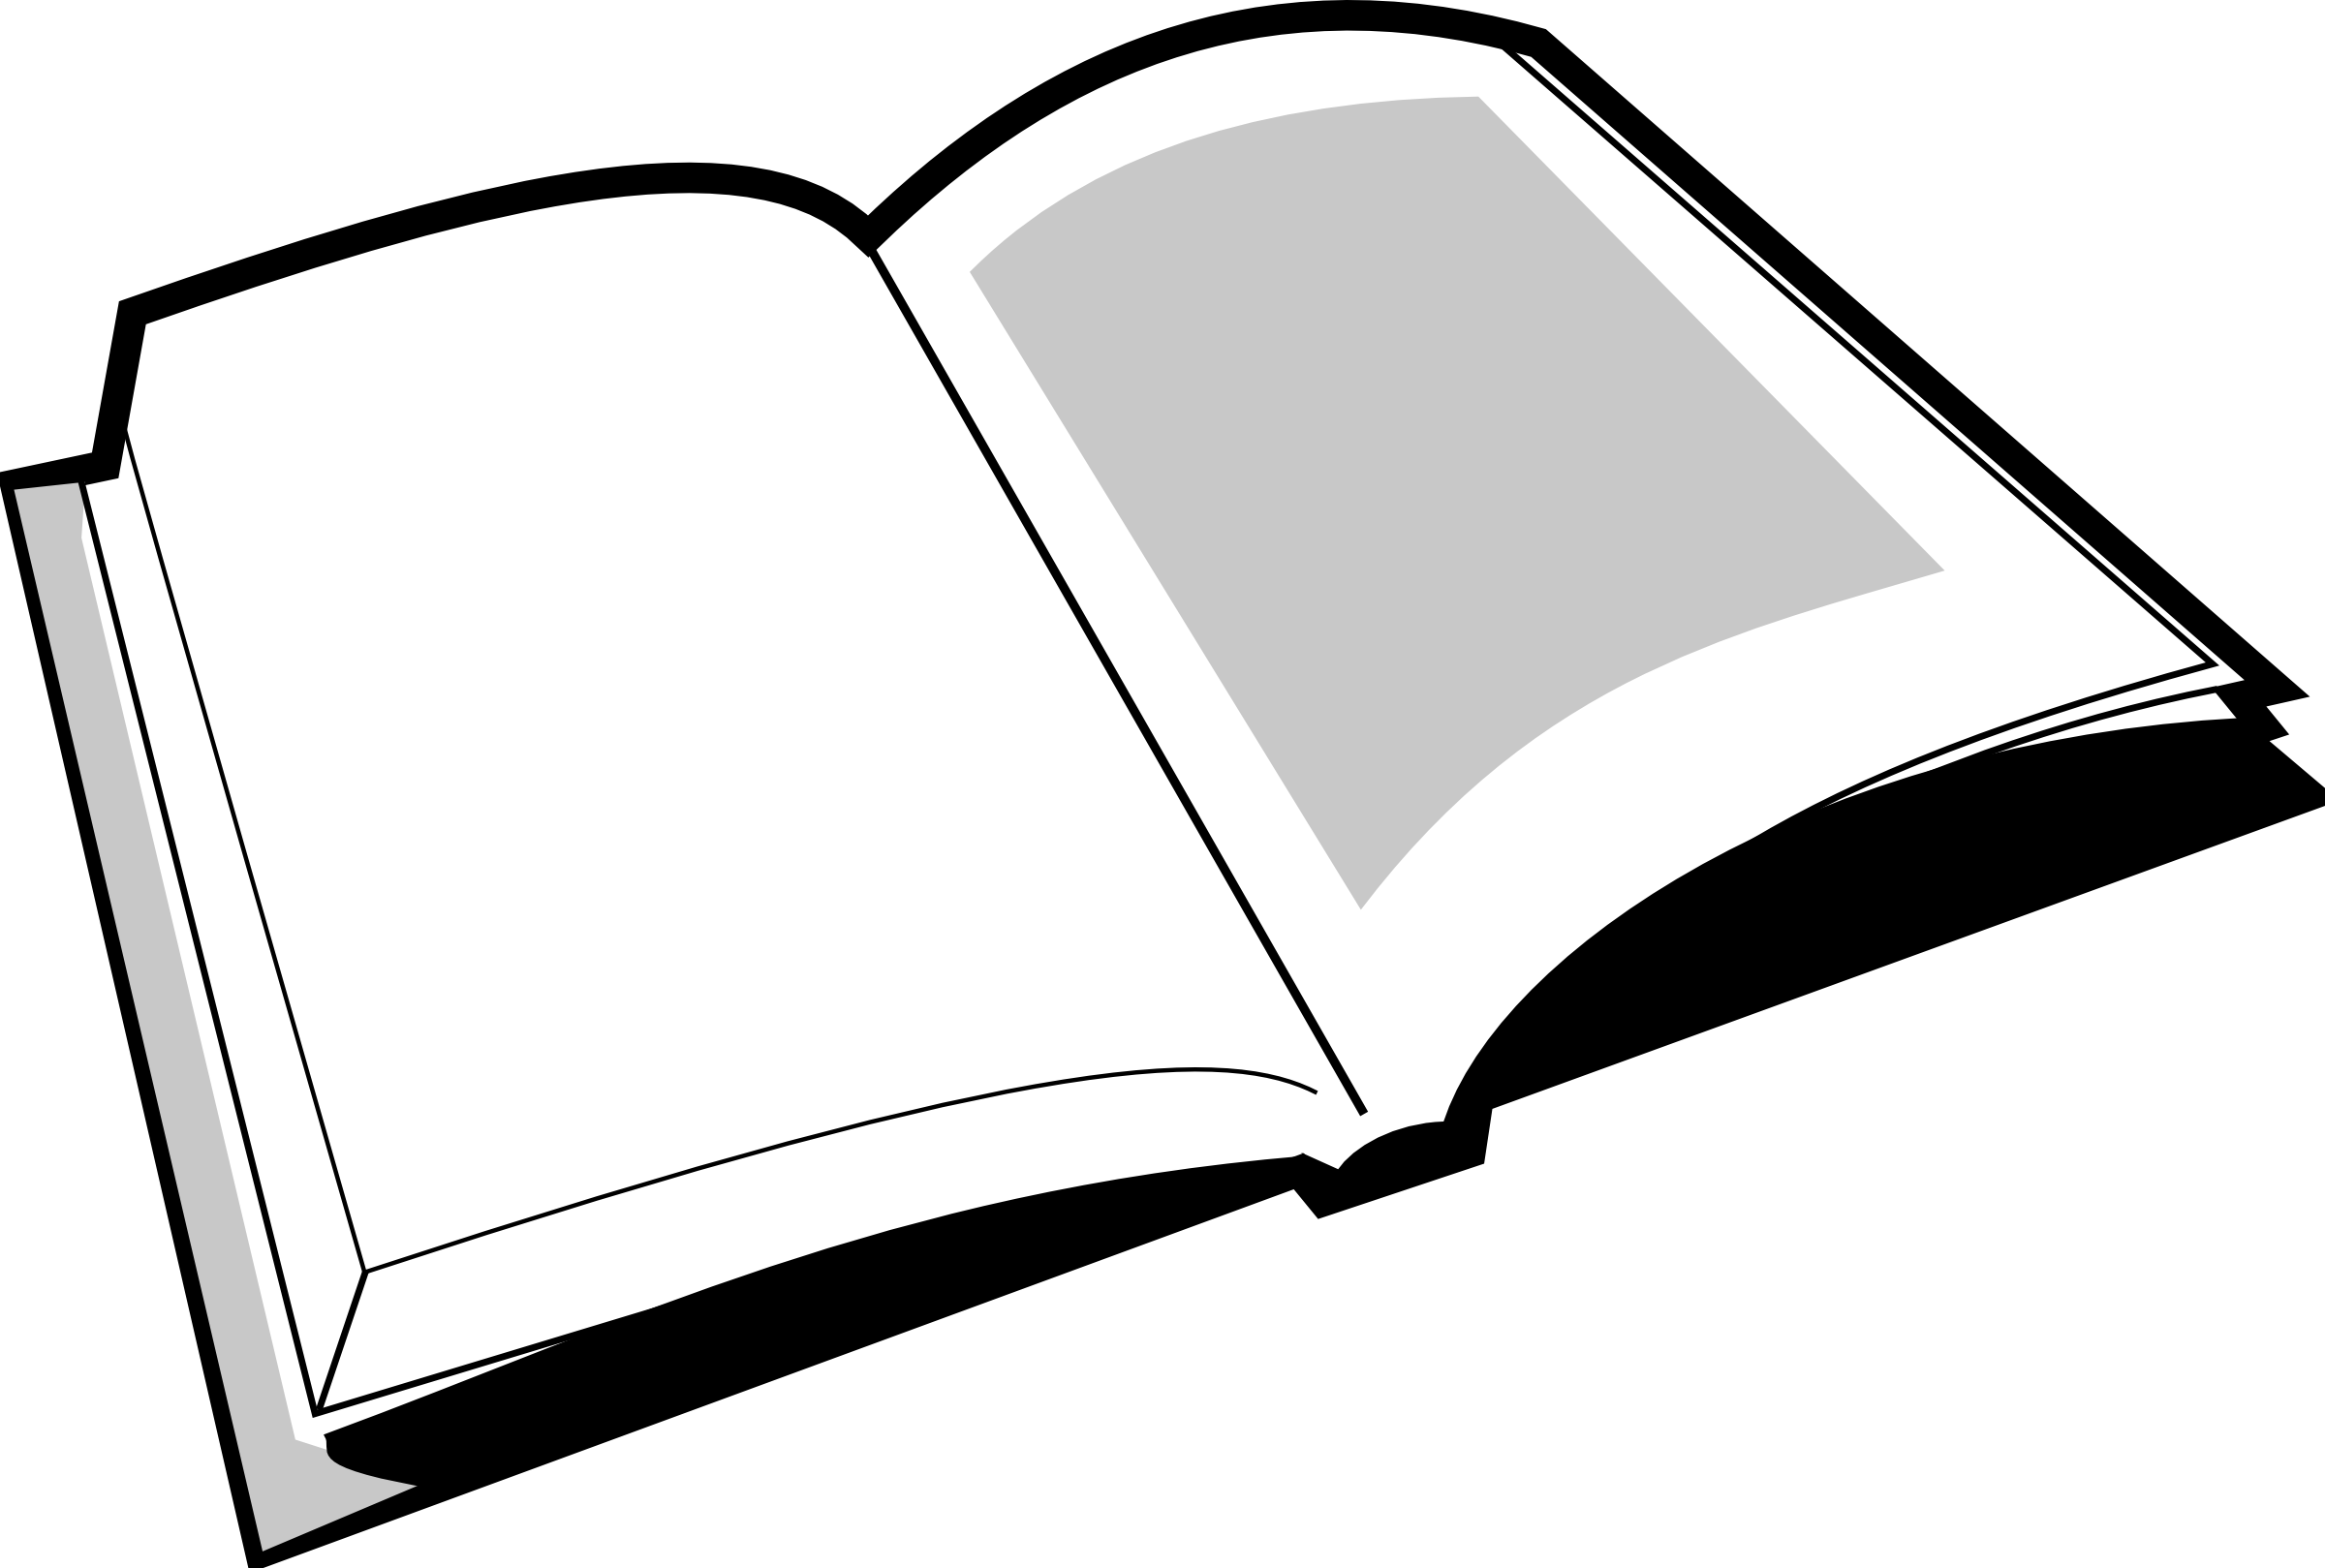 book logo clip art - photo #46